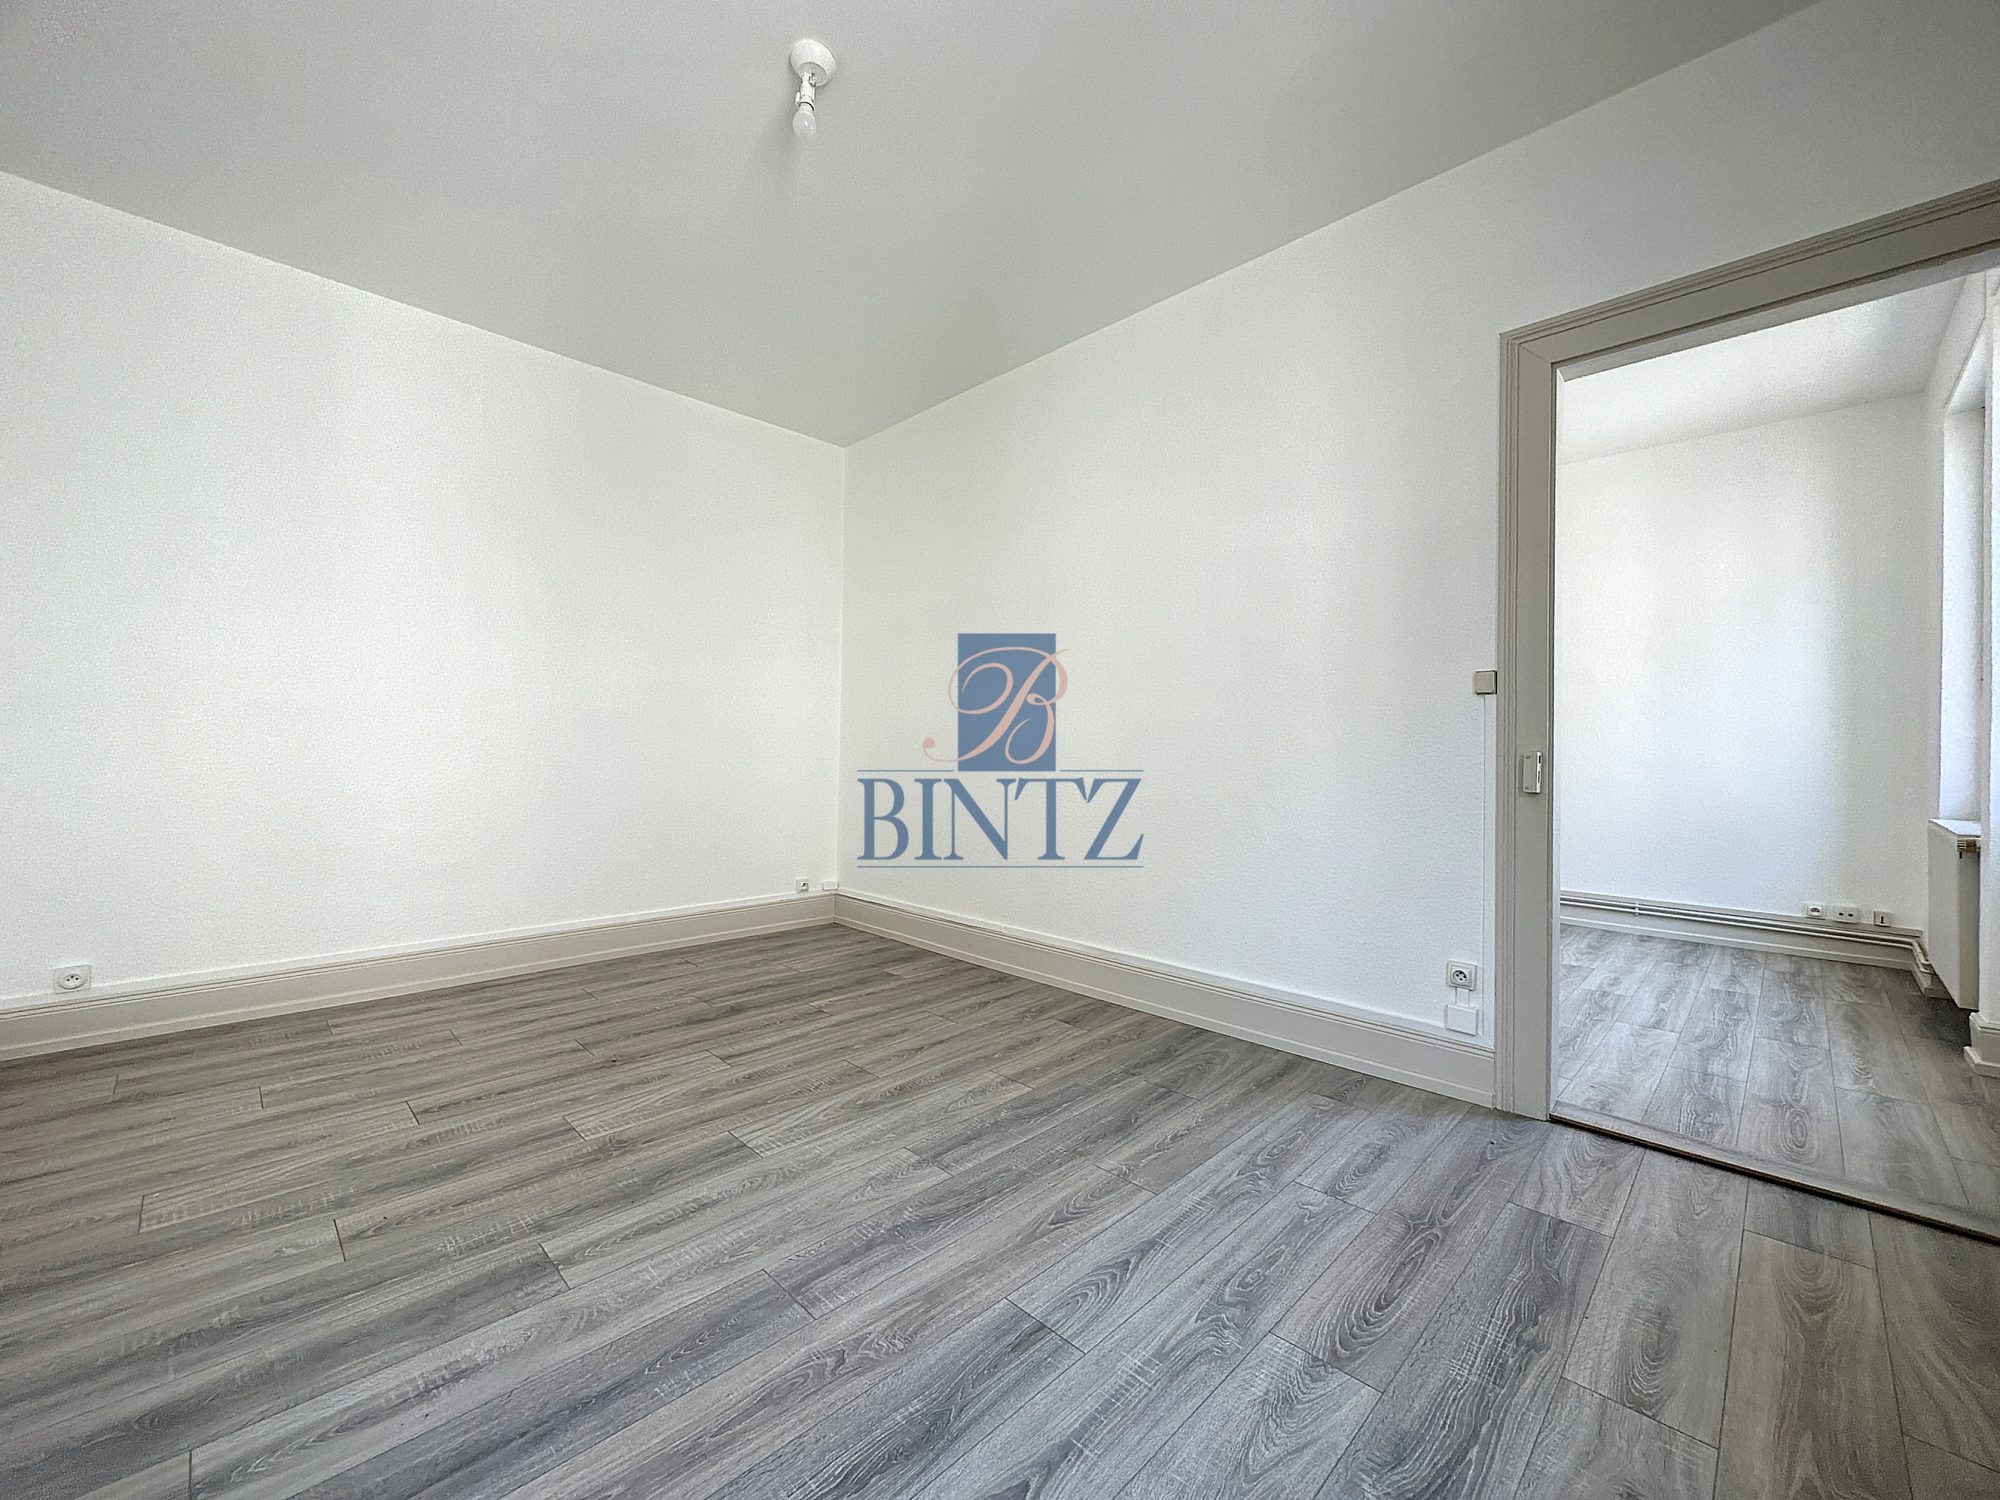 2P SCHILTIGHEIM - location immobilière - Bintz Immobilier - 2